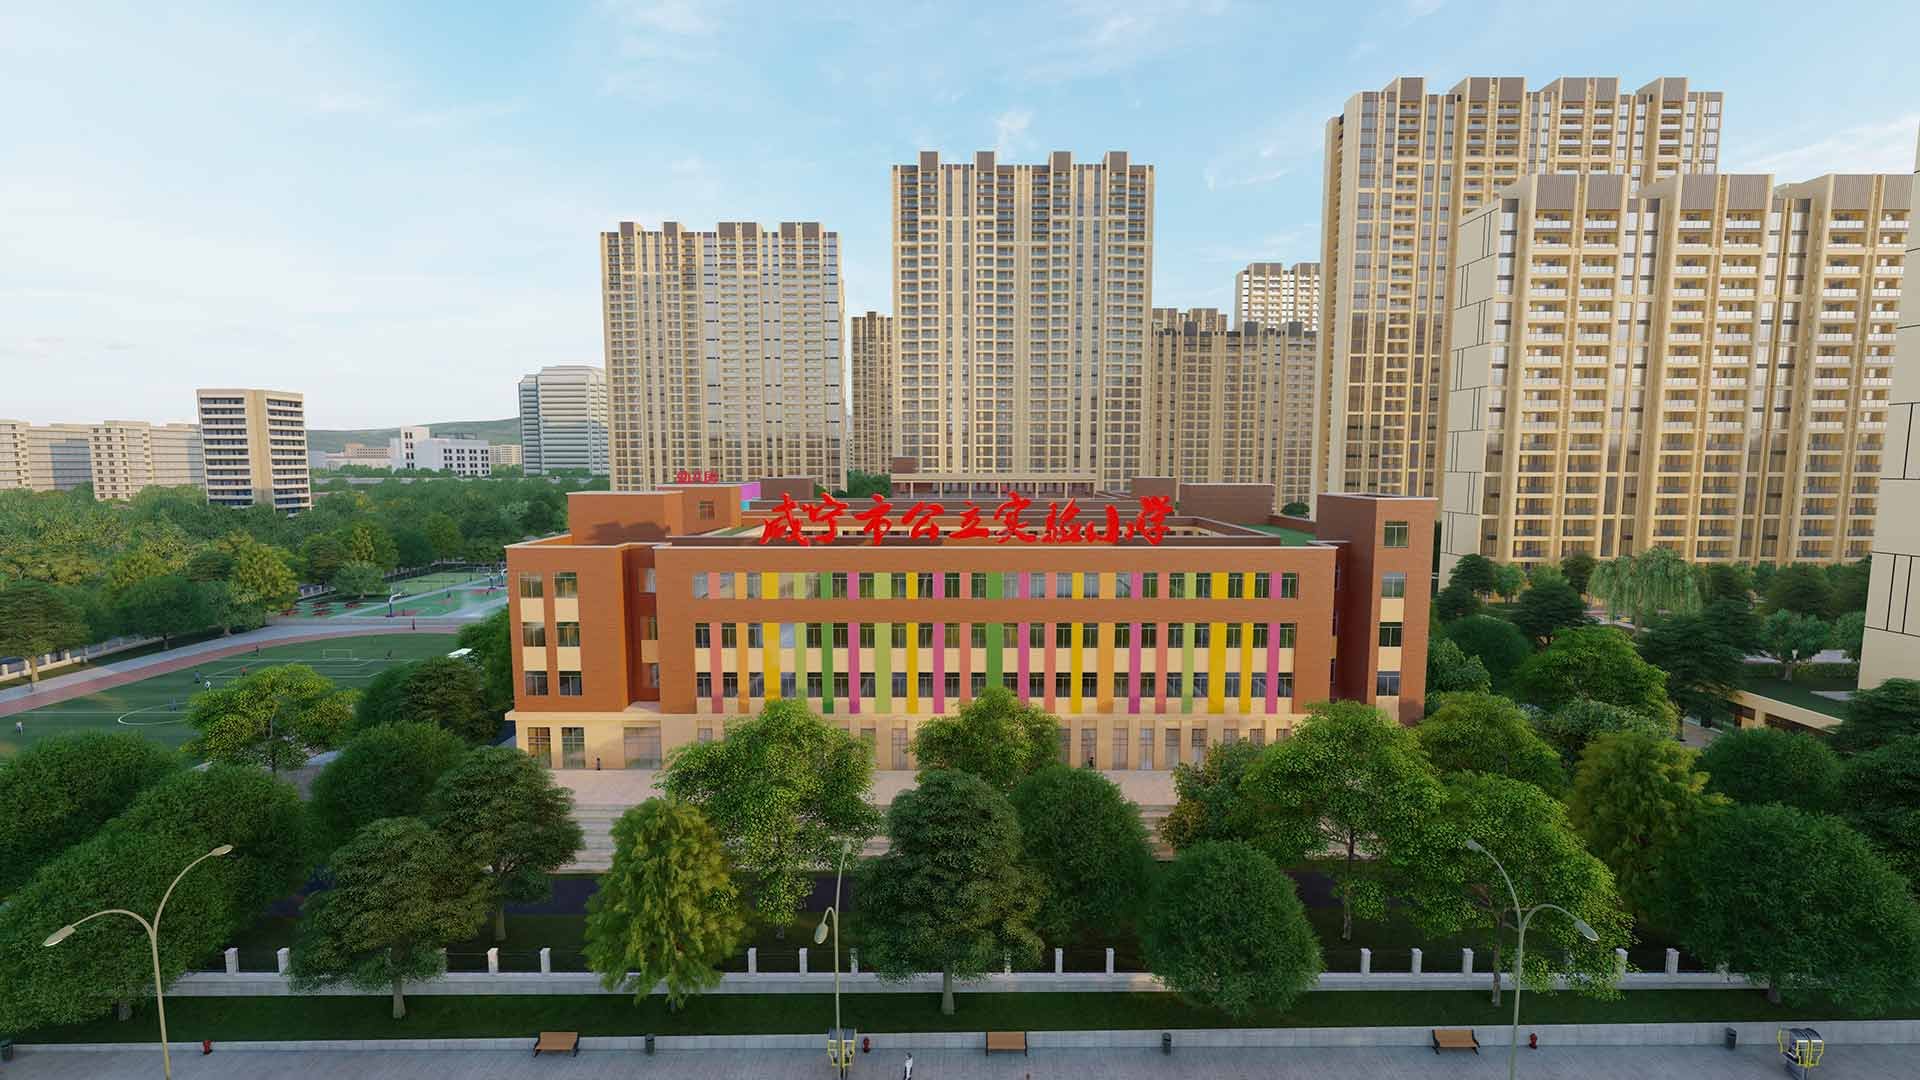 重磅新闻：”咸宁市实验小学高新校区”批复为 ”咸宁市重要民生工程”，明年9月建成开学